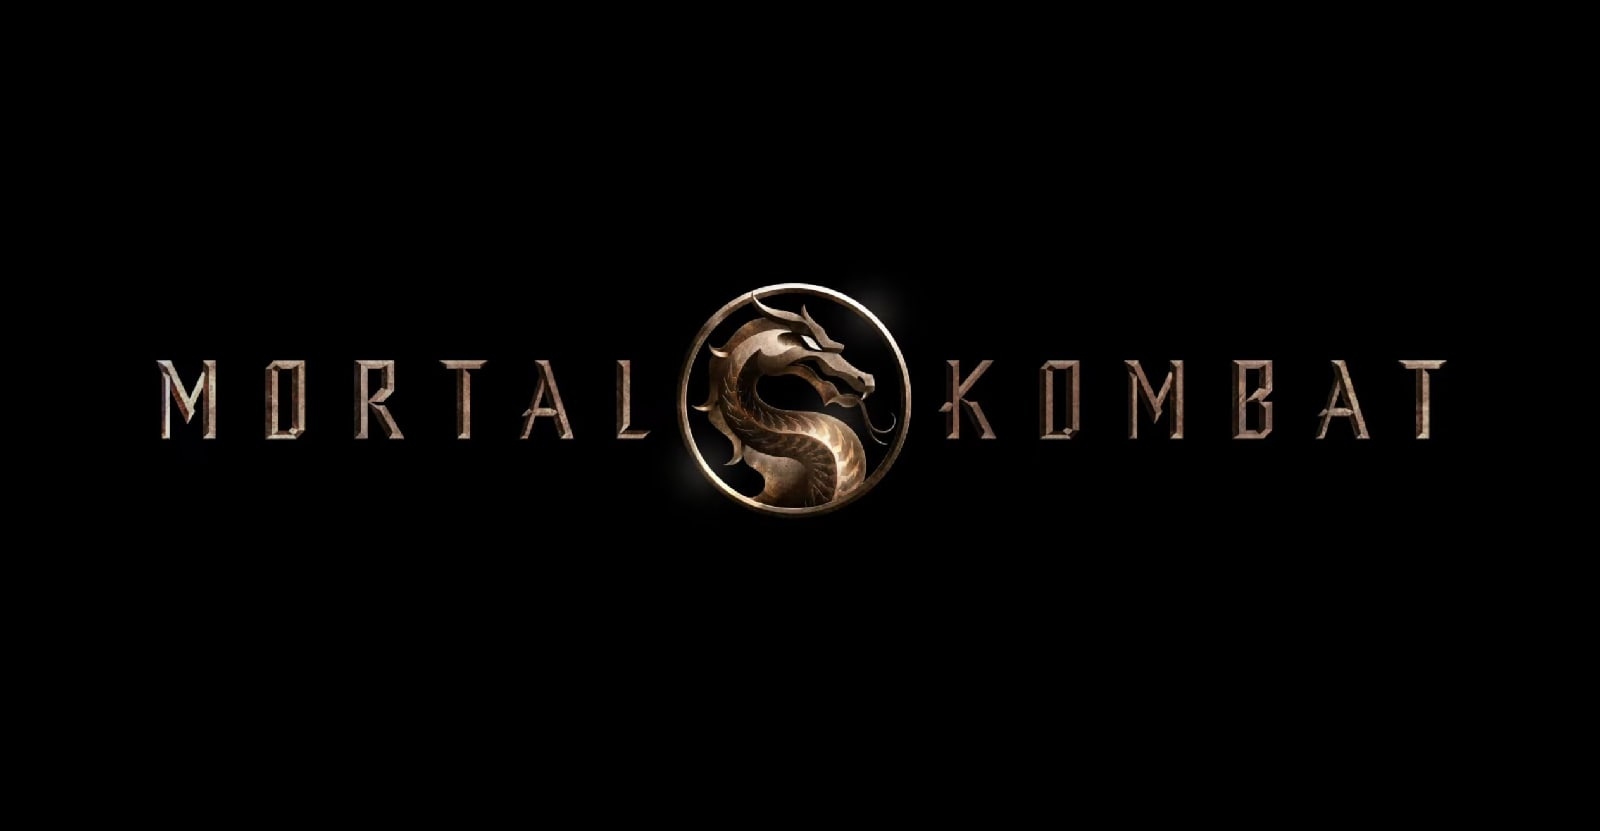 Mortal Kombat HD Desktop Wallpapers for 4K Ultra HD